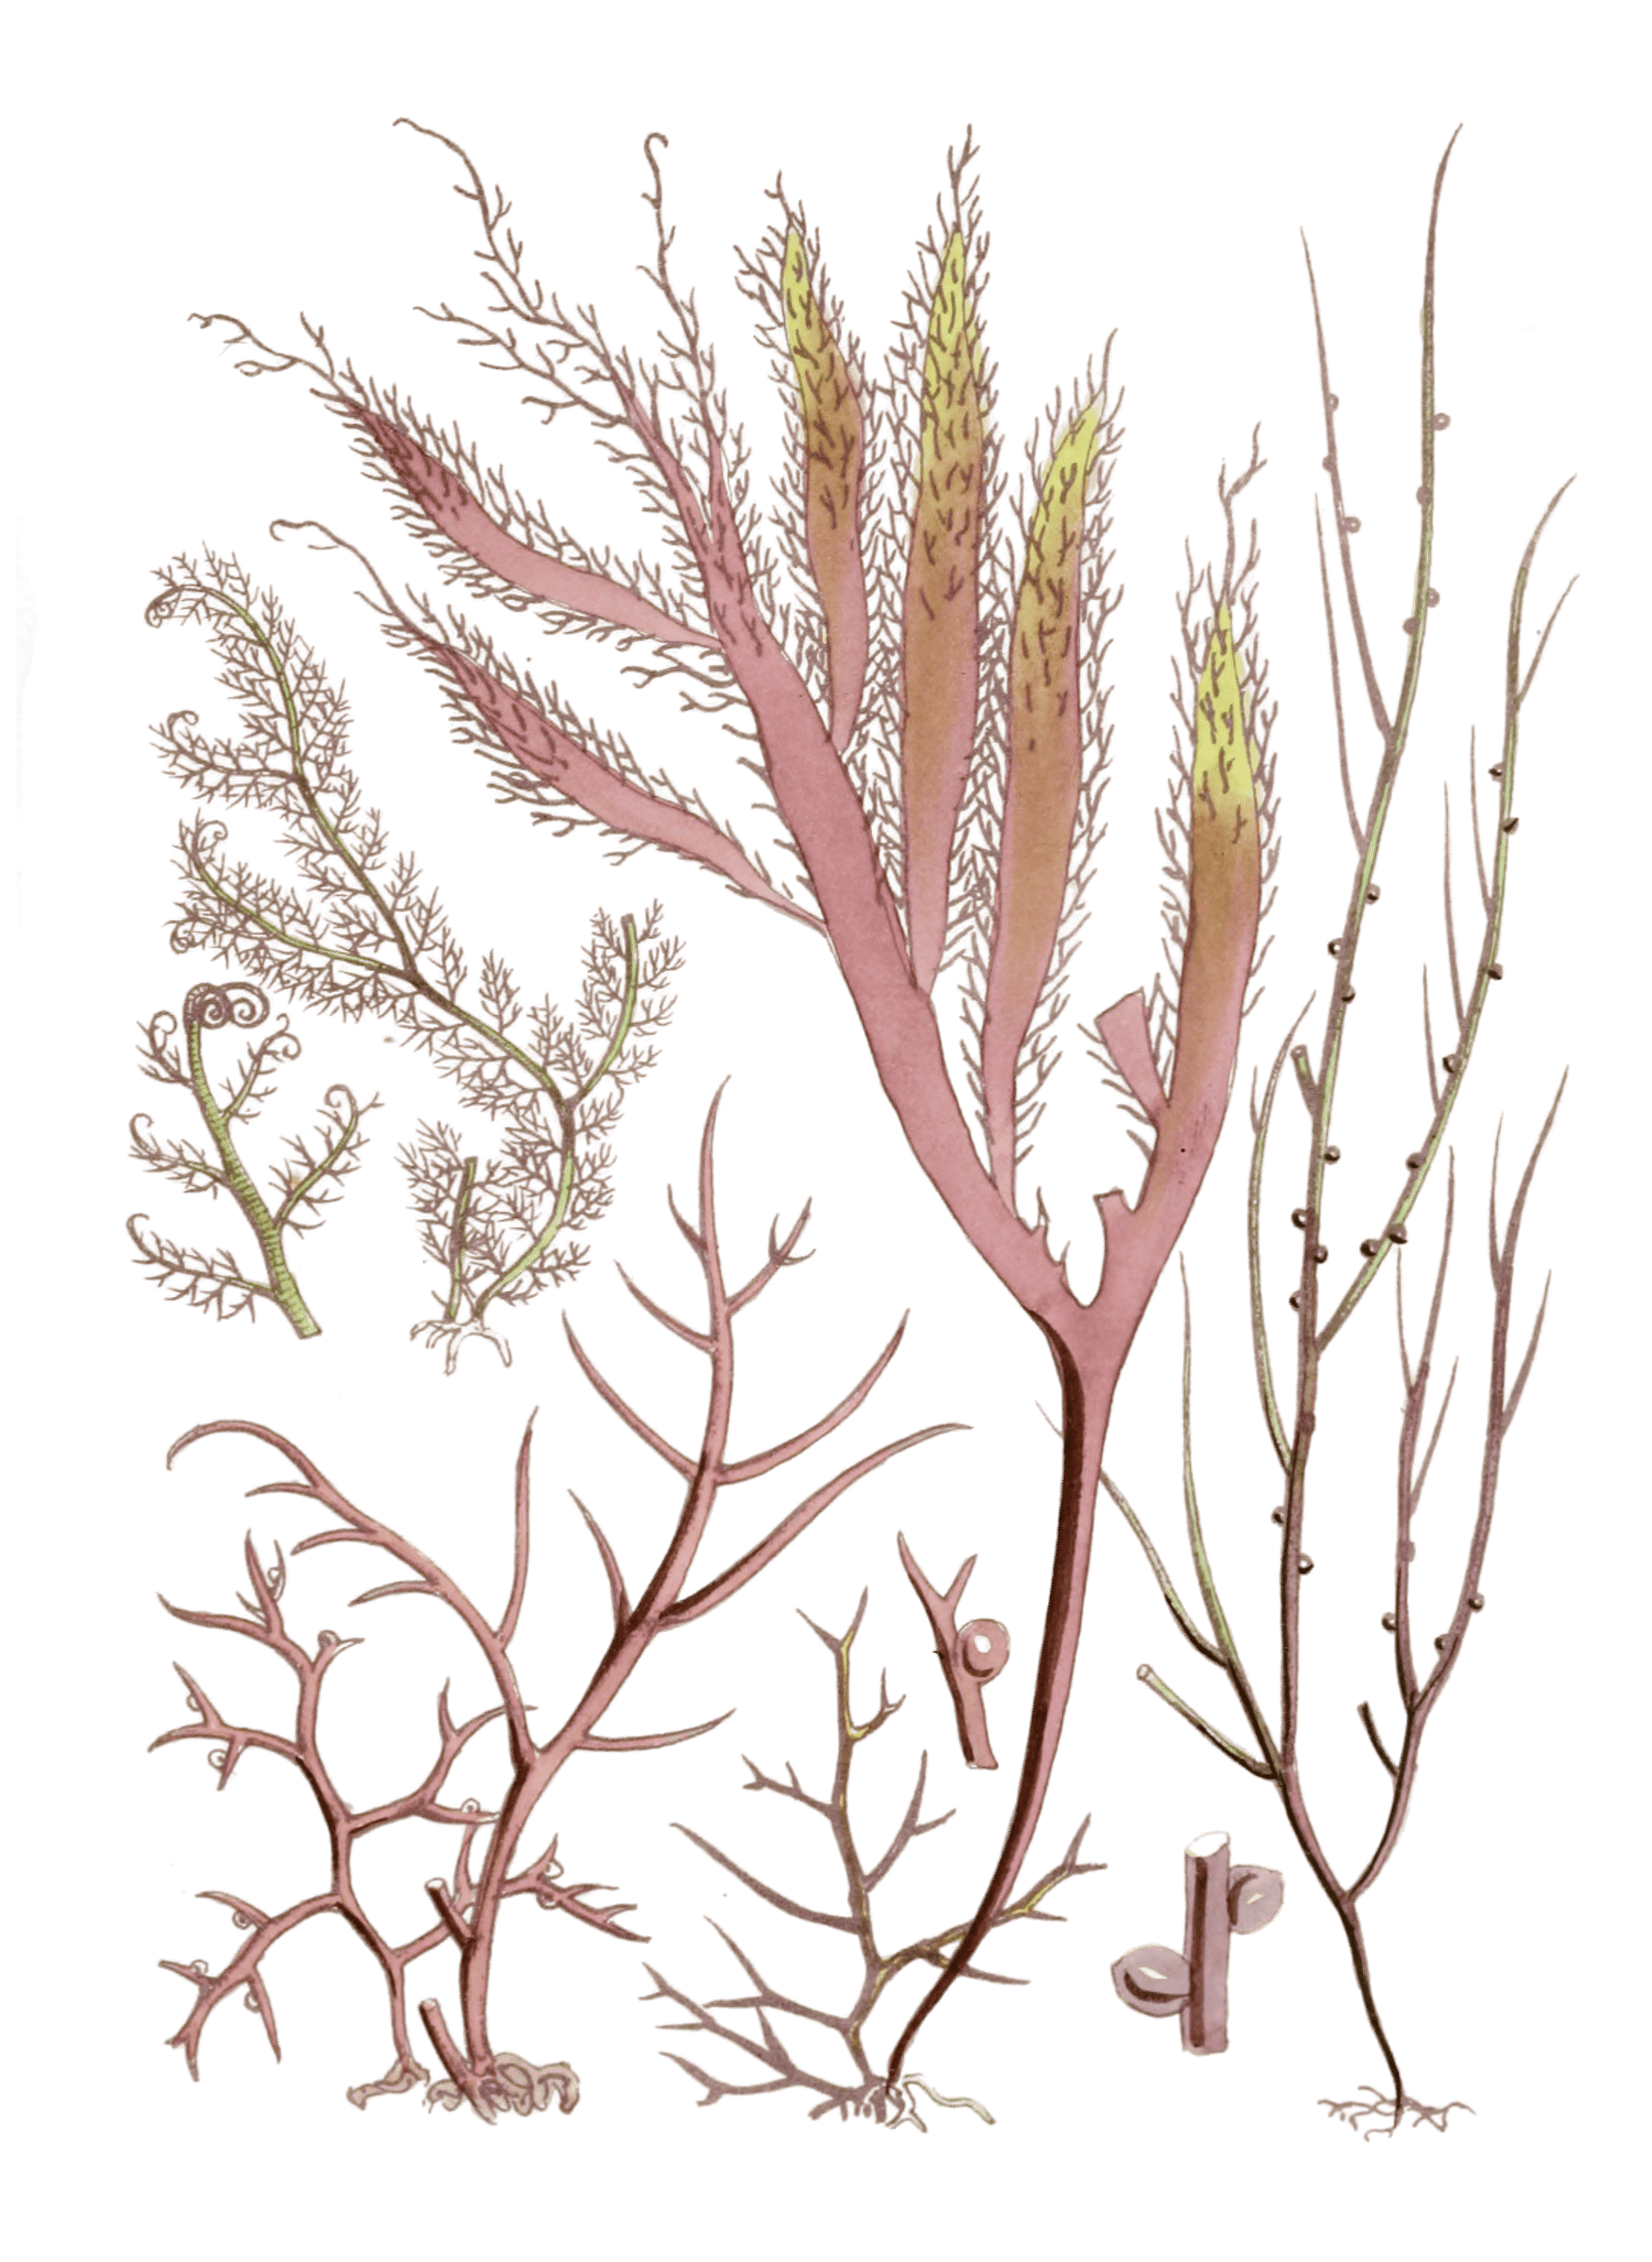 vintage seaweed illustration